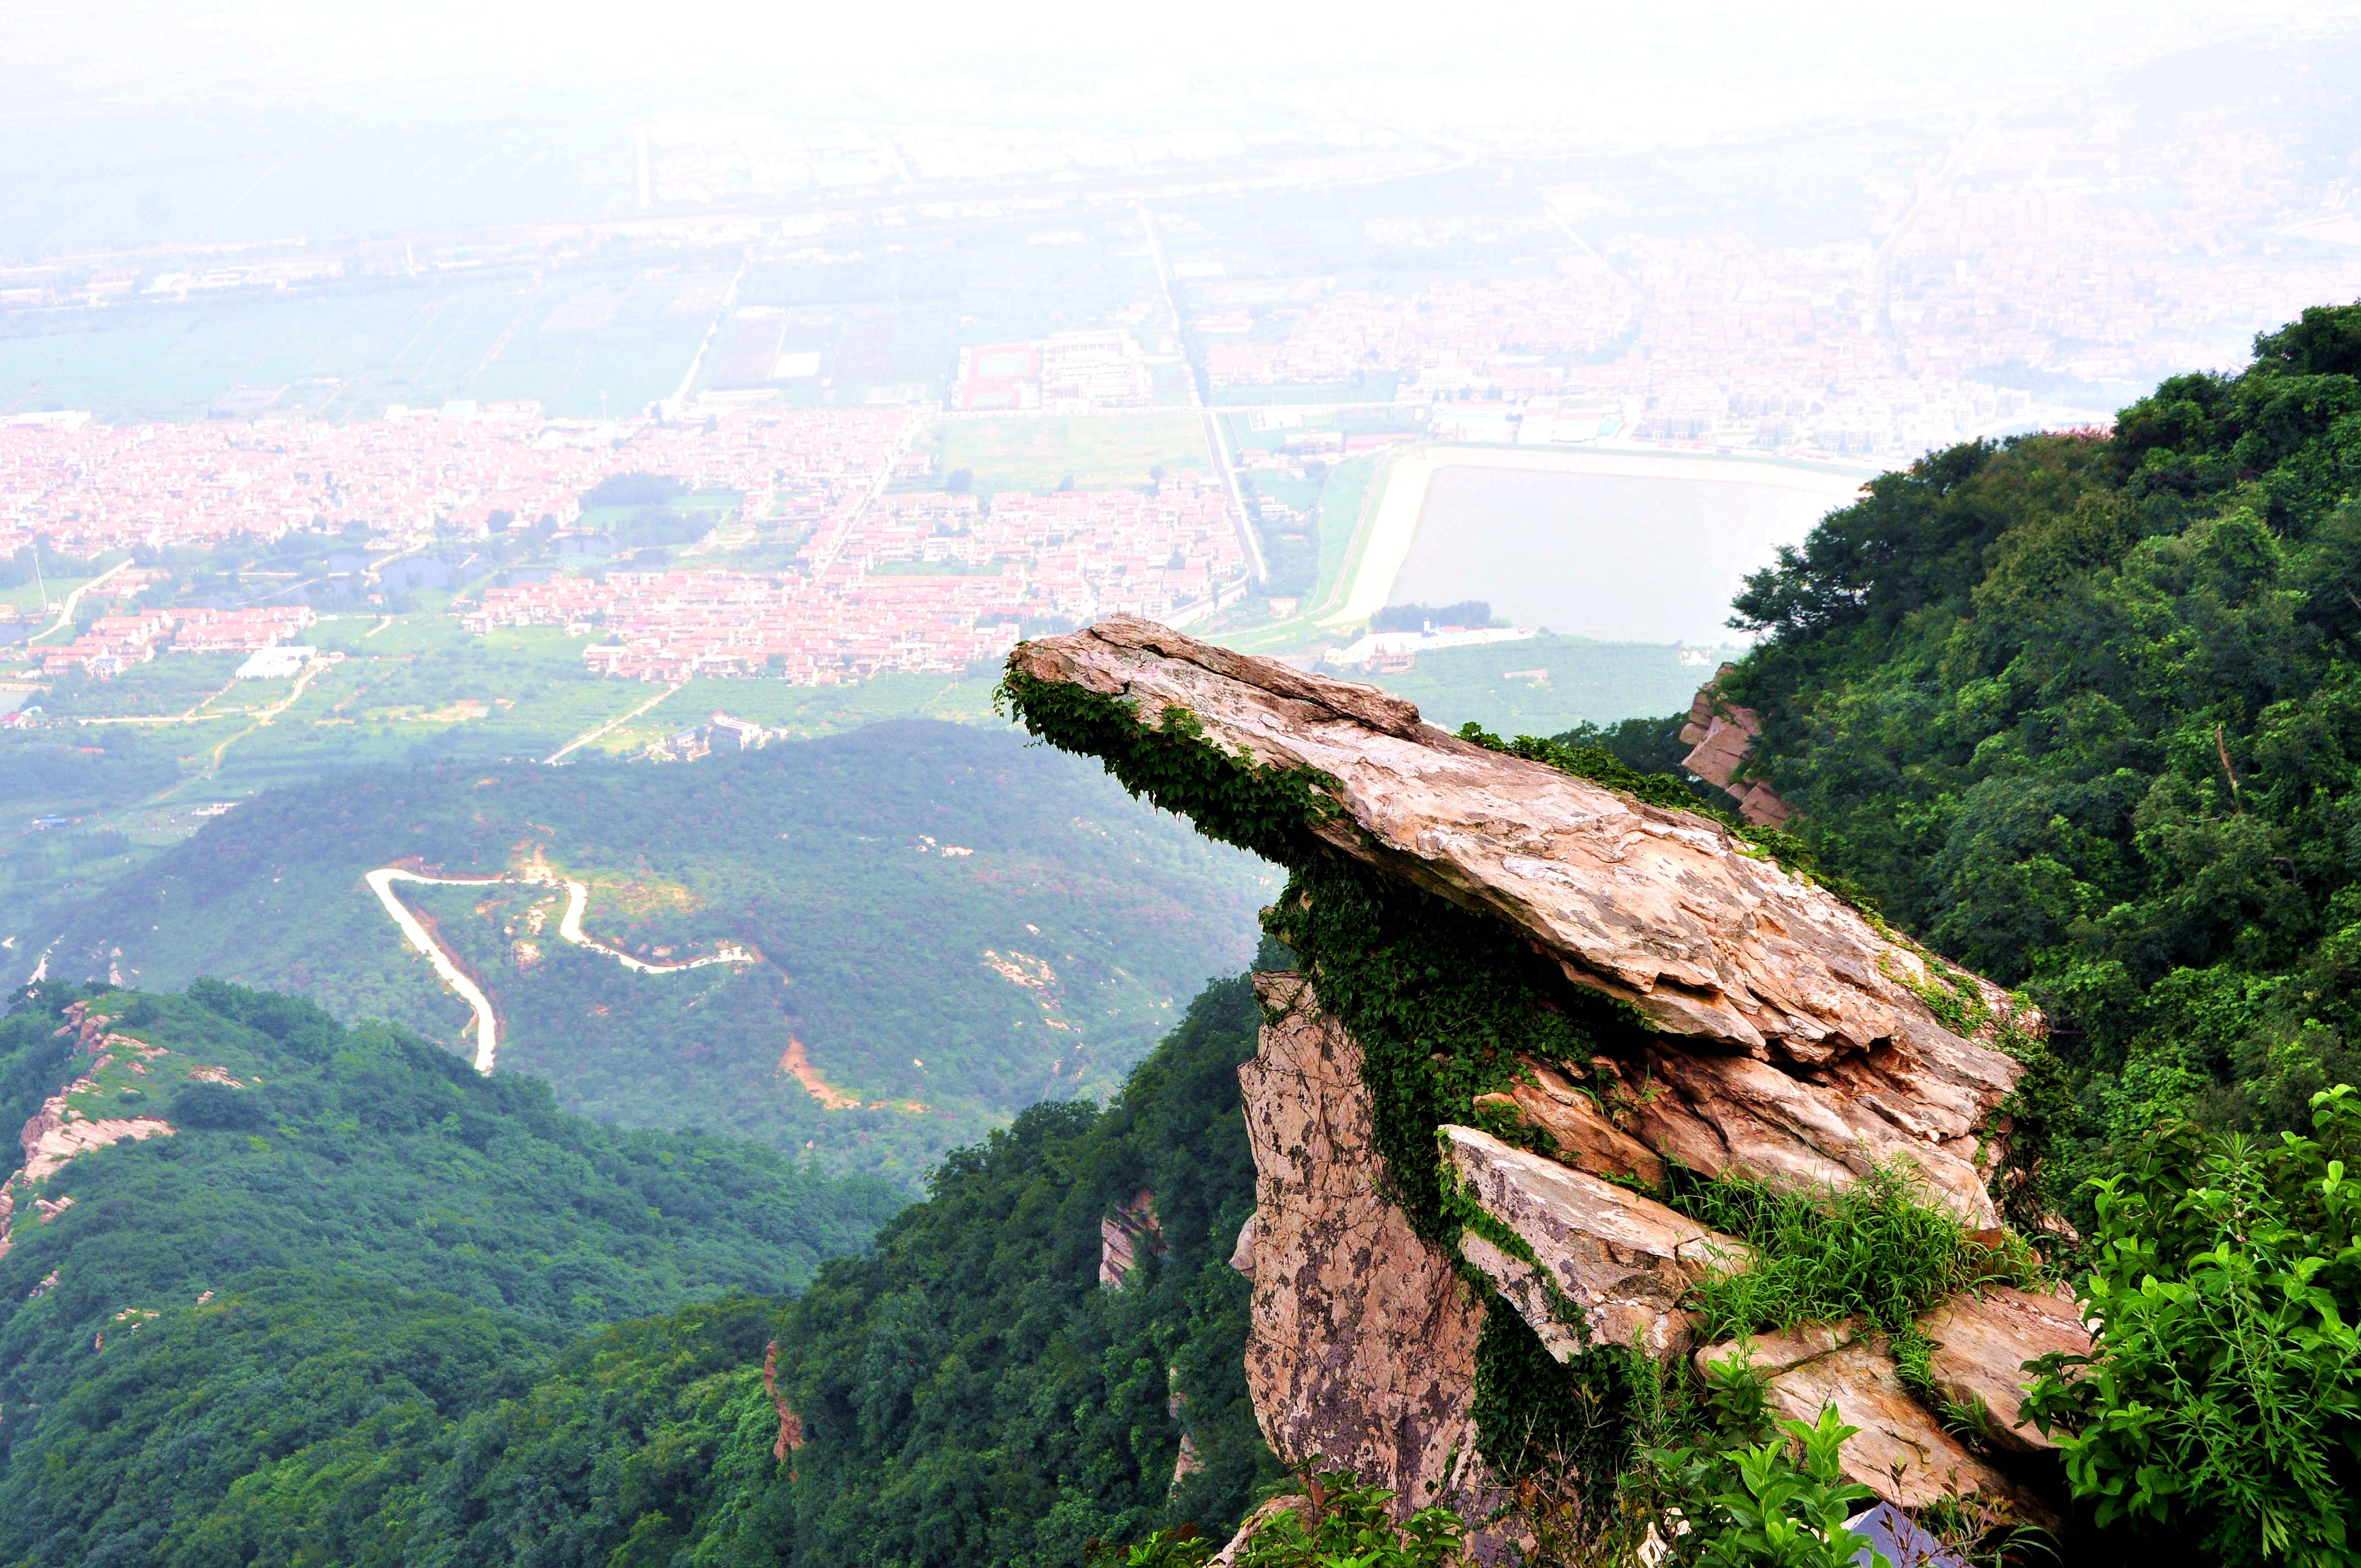 说起连云港的美景,很多人首先想到的可能就是连云港的花果山